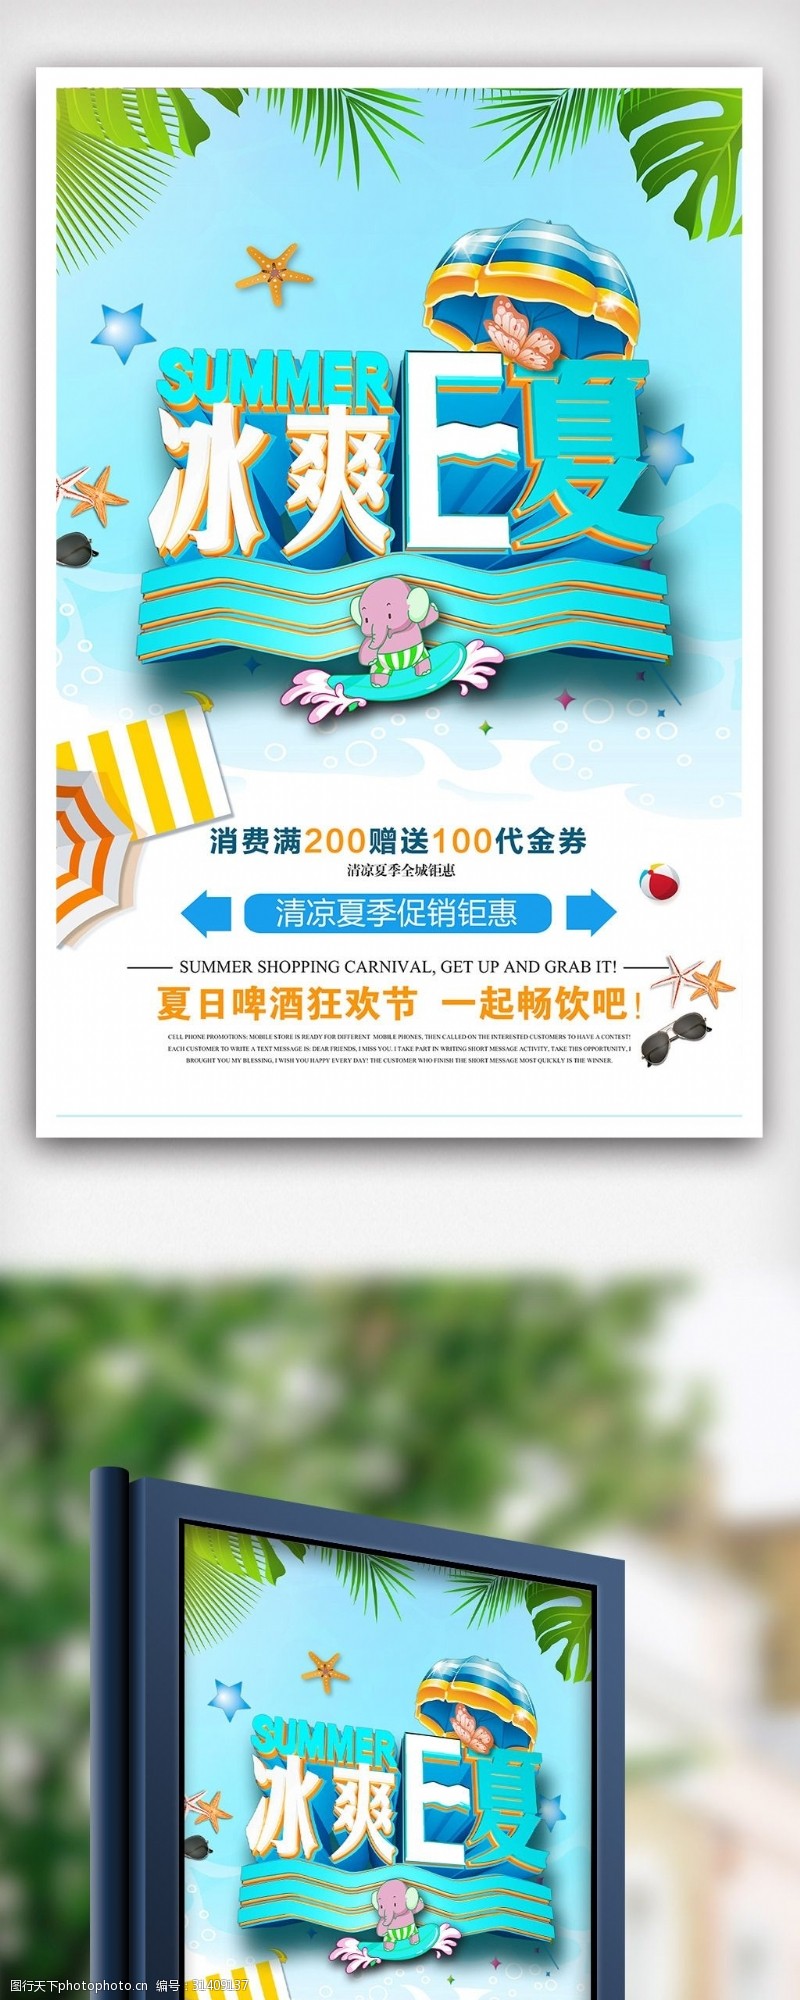 清爽e夏时尚大气夏日夏季促销海报